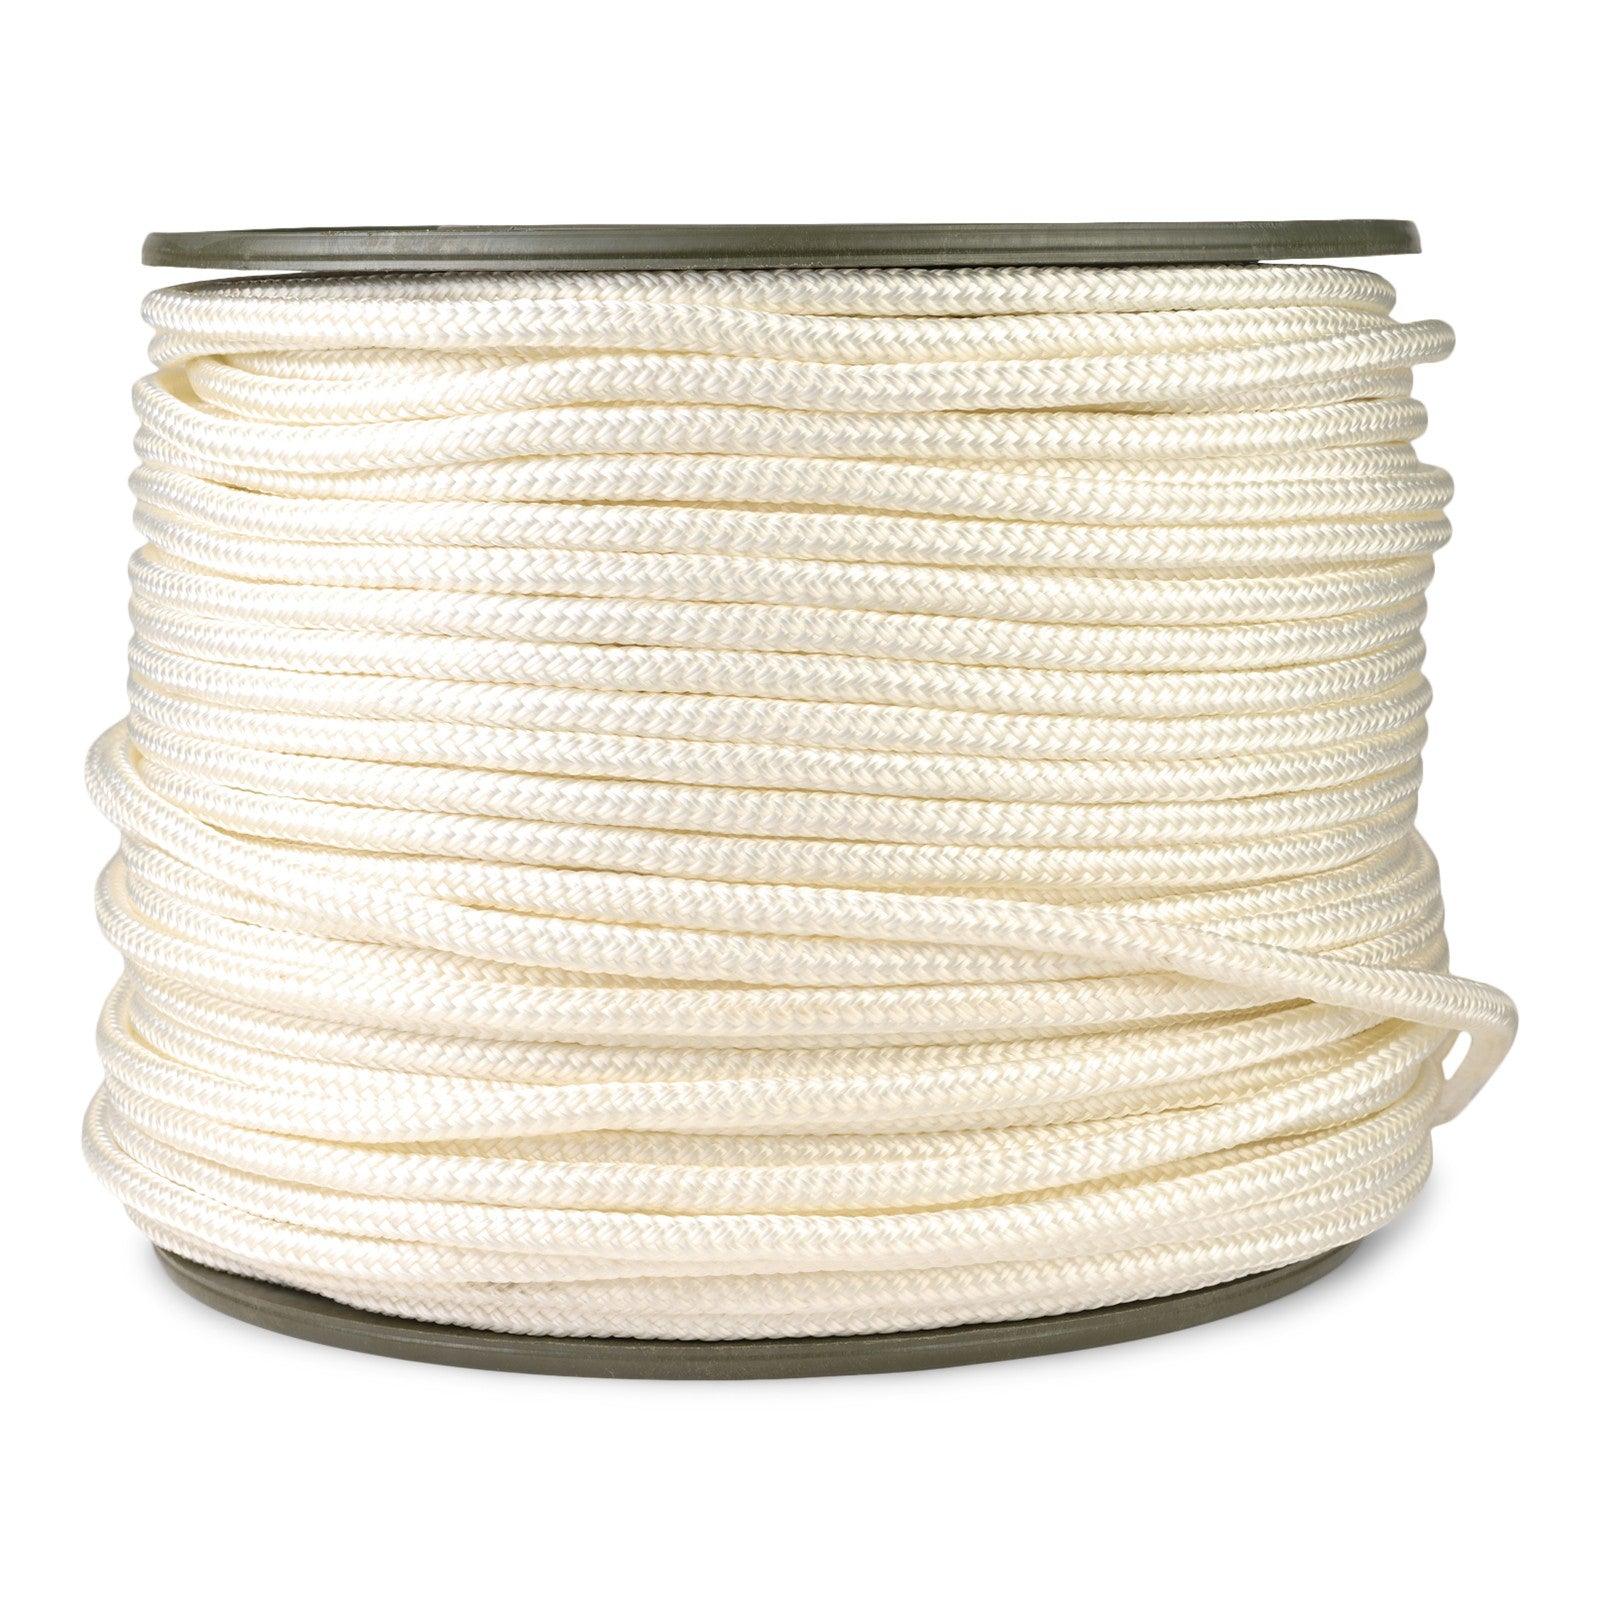 http://rochfordsupply.com/cdn/shop/files/braided-polyester-rope-rochford-supply.jpg?v=1688871176